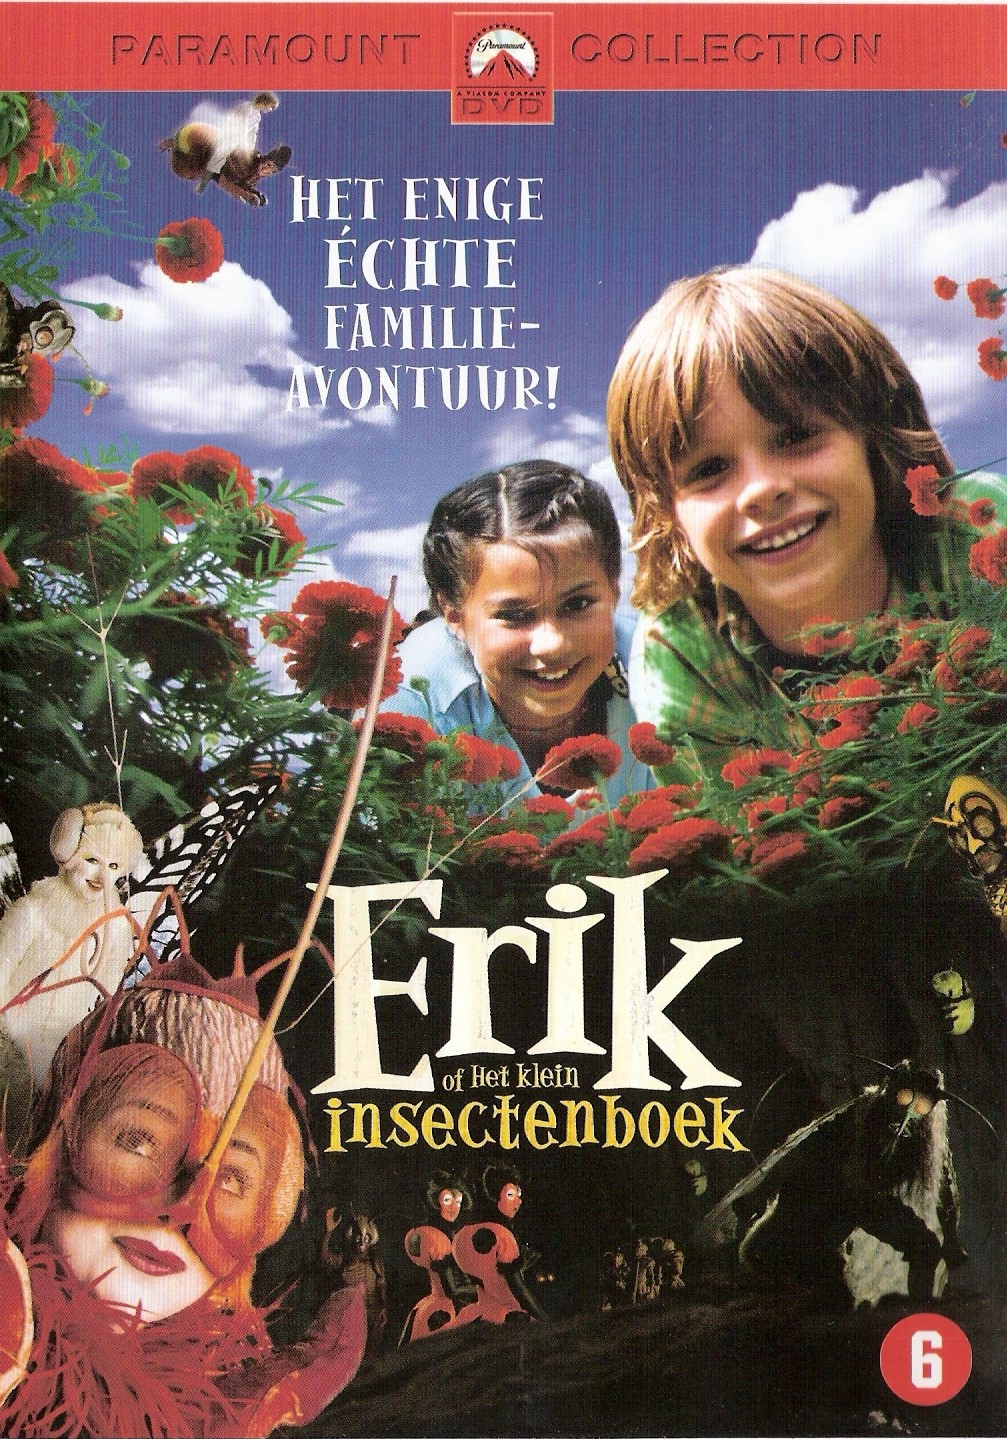 REPOST - Erik of het klein insectenboek (2004) (DVD5)